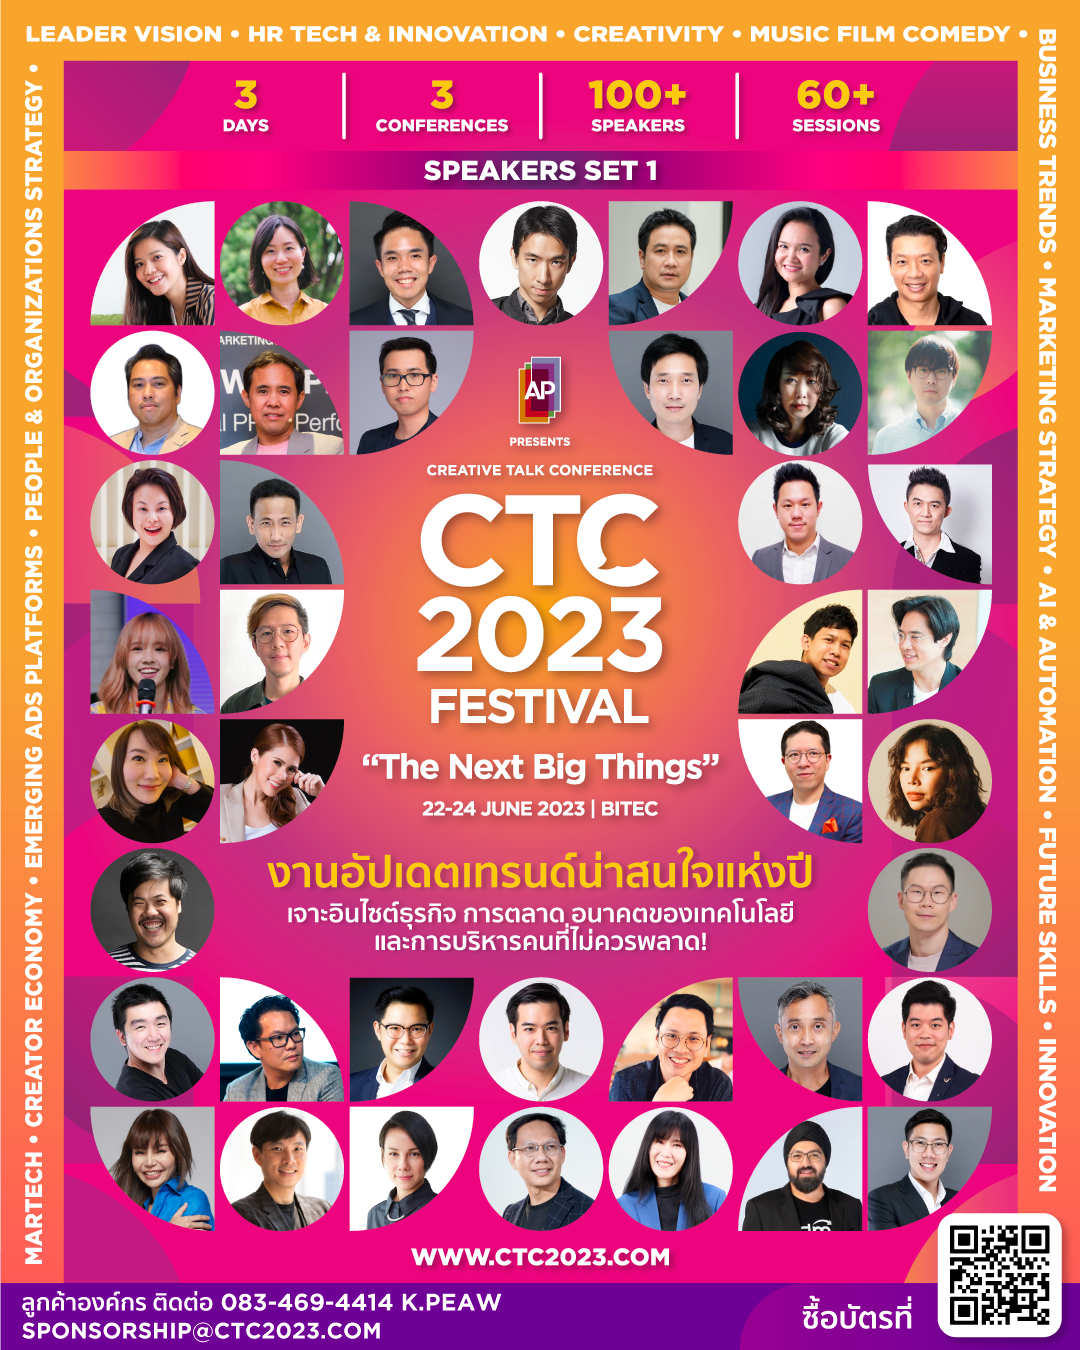 Cover Image for CTC2023 FESTIVAL งานอัปเดตเทรนด์น่าสนใจแห่งปี เจาะอินไซต์ธุรกิจ การตลาด อนาคตของเทคโนโลยี และการบริหารคนที่ไม่ควรพลาด